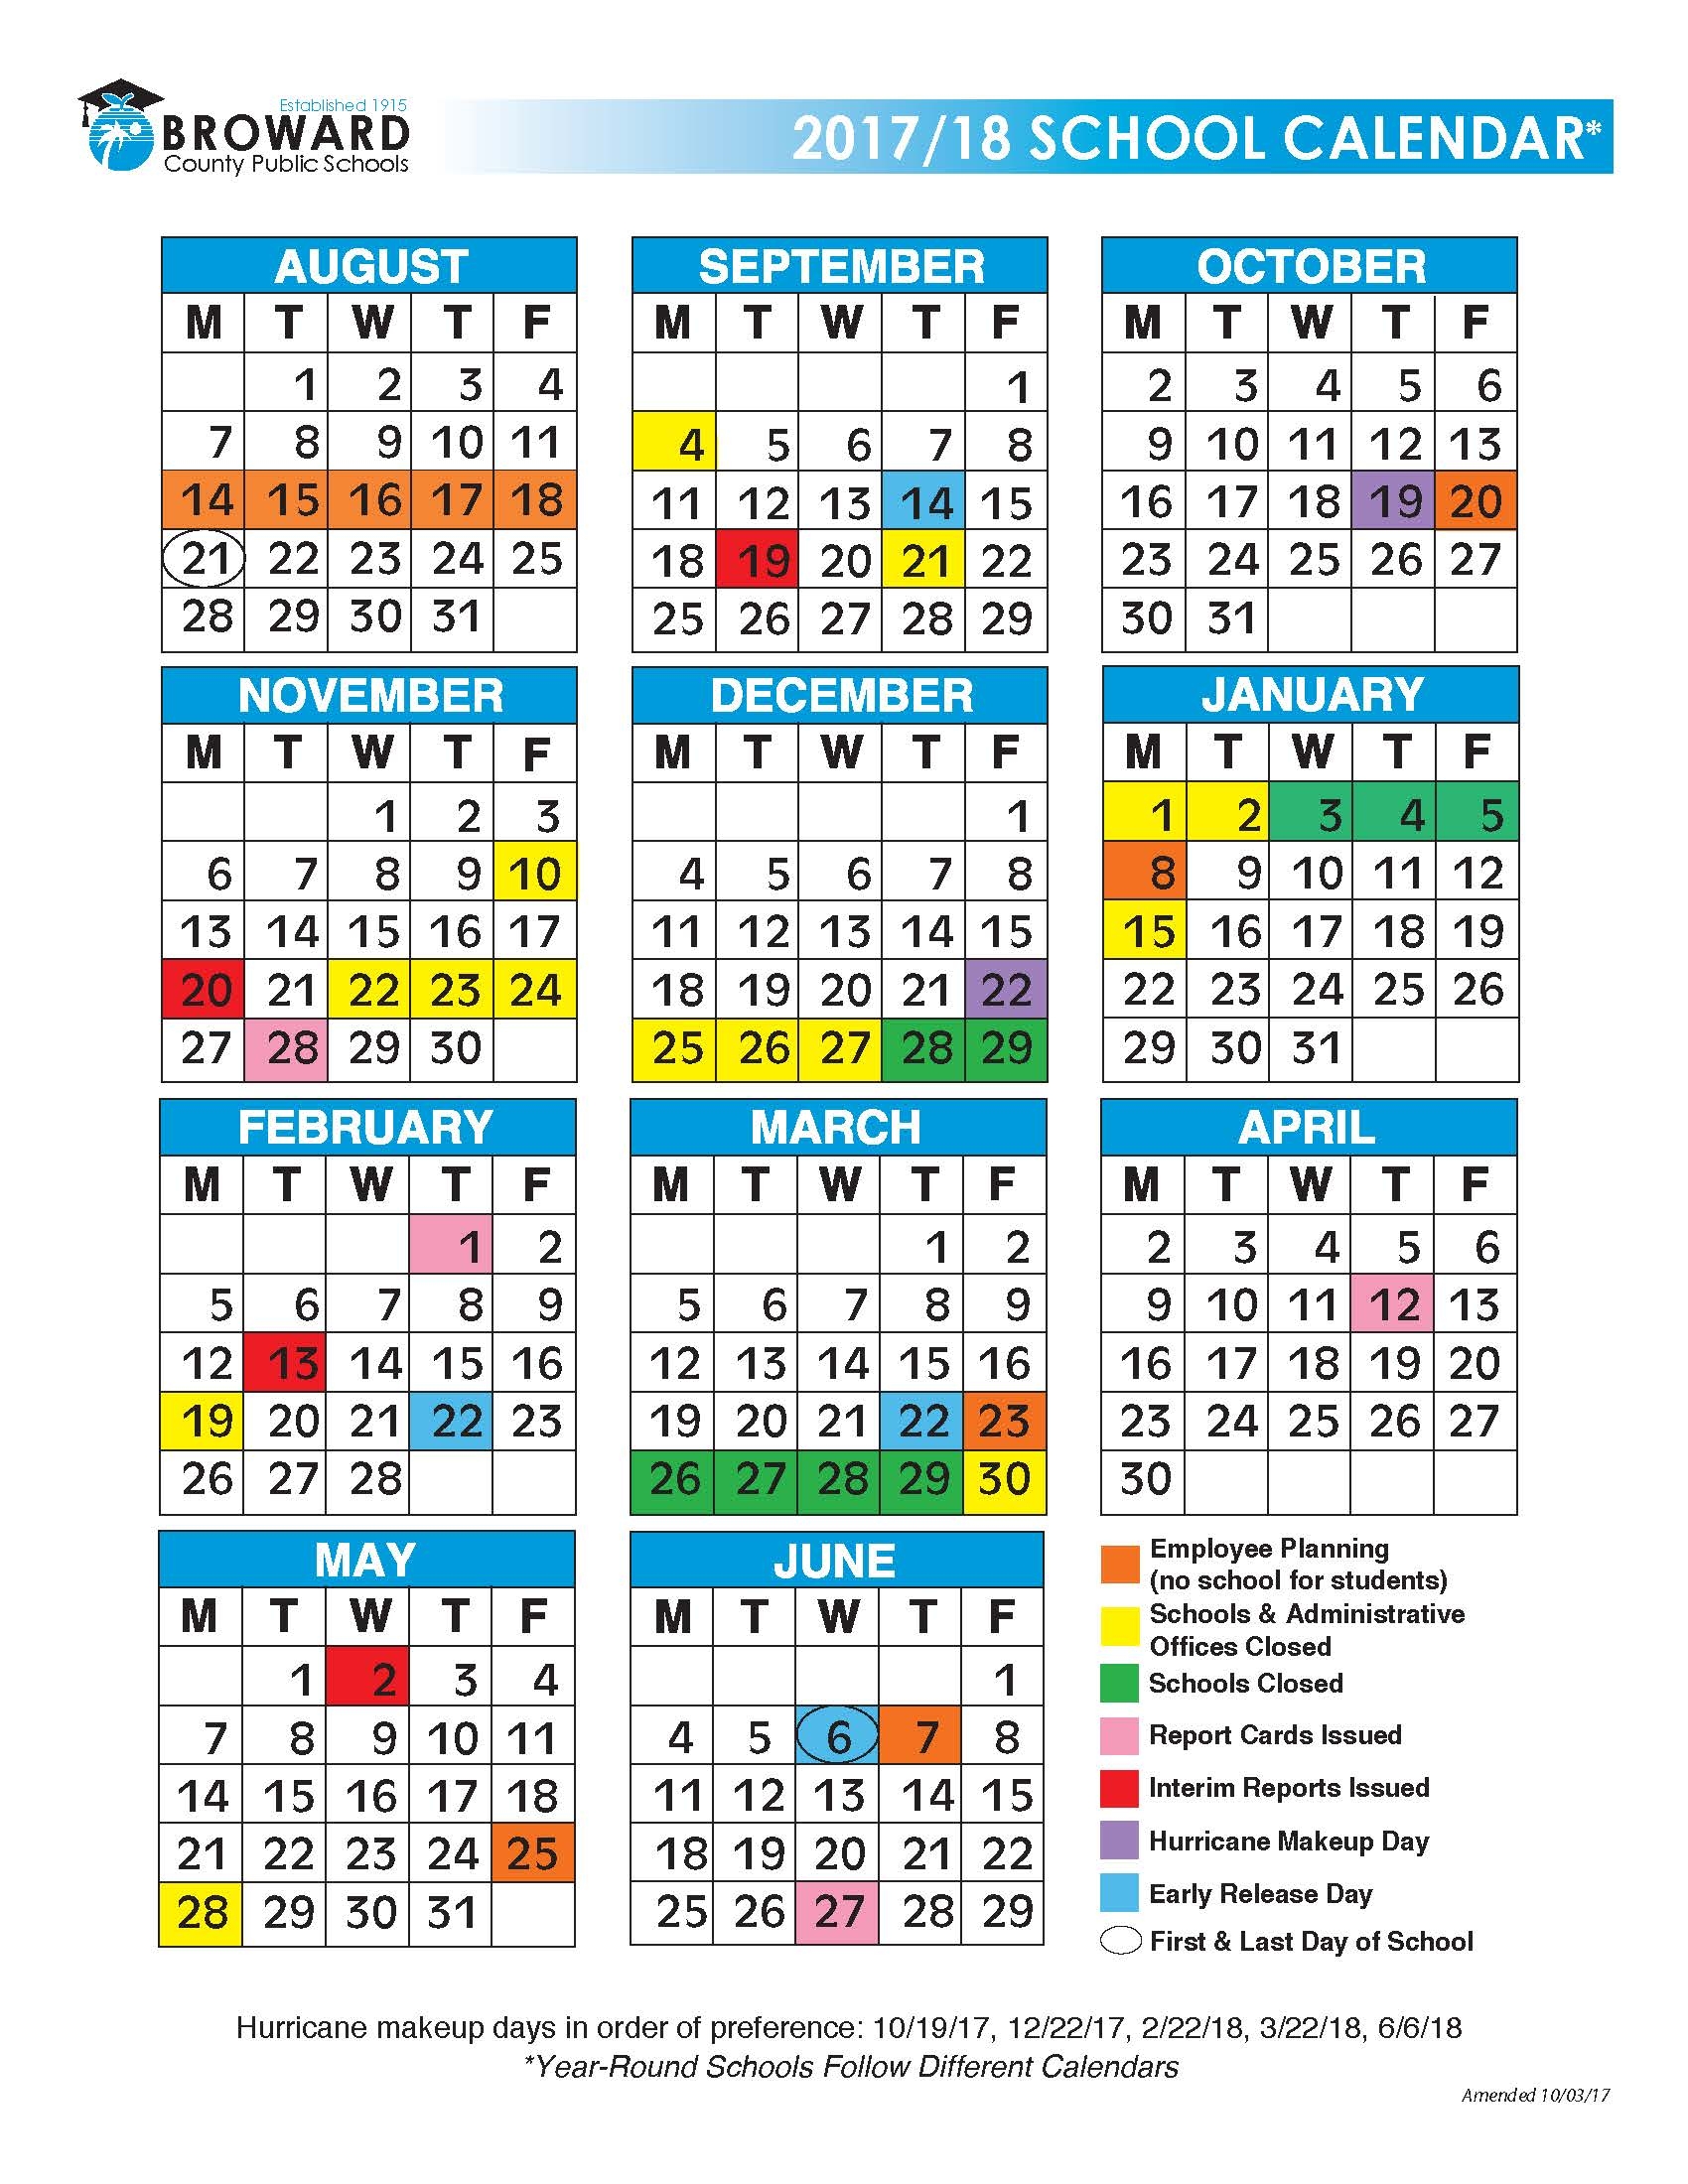 broward-county-calendar-qualads